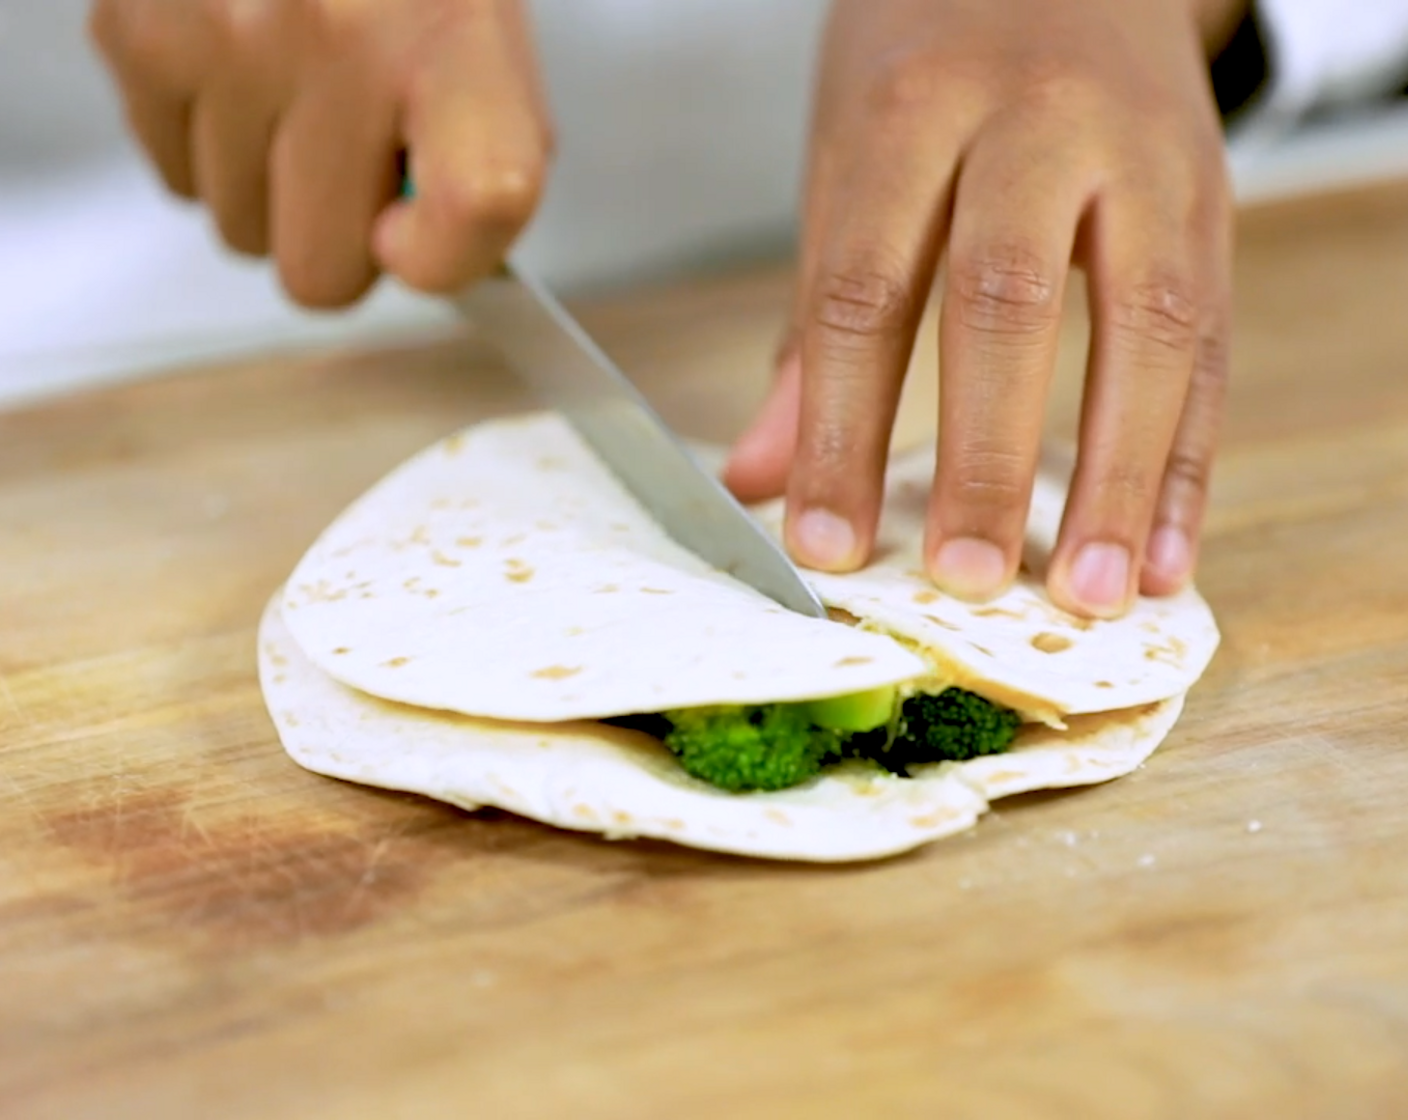 Schritt 4 Mit einem Pizzaschneider oder Messer vorsichtig vierteln. Heiss servieren und geniessen!